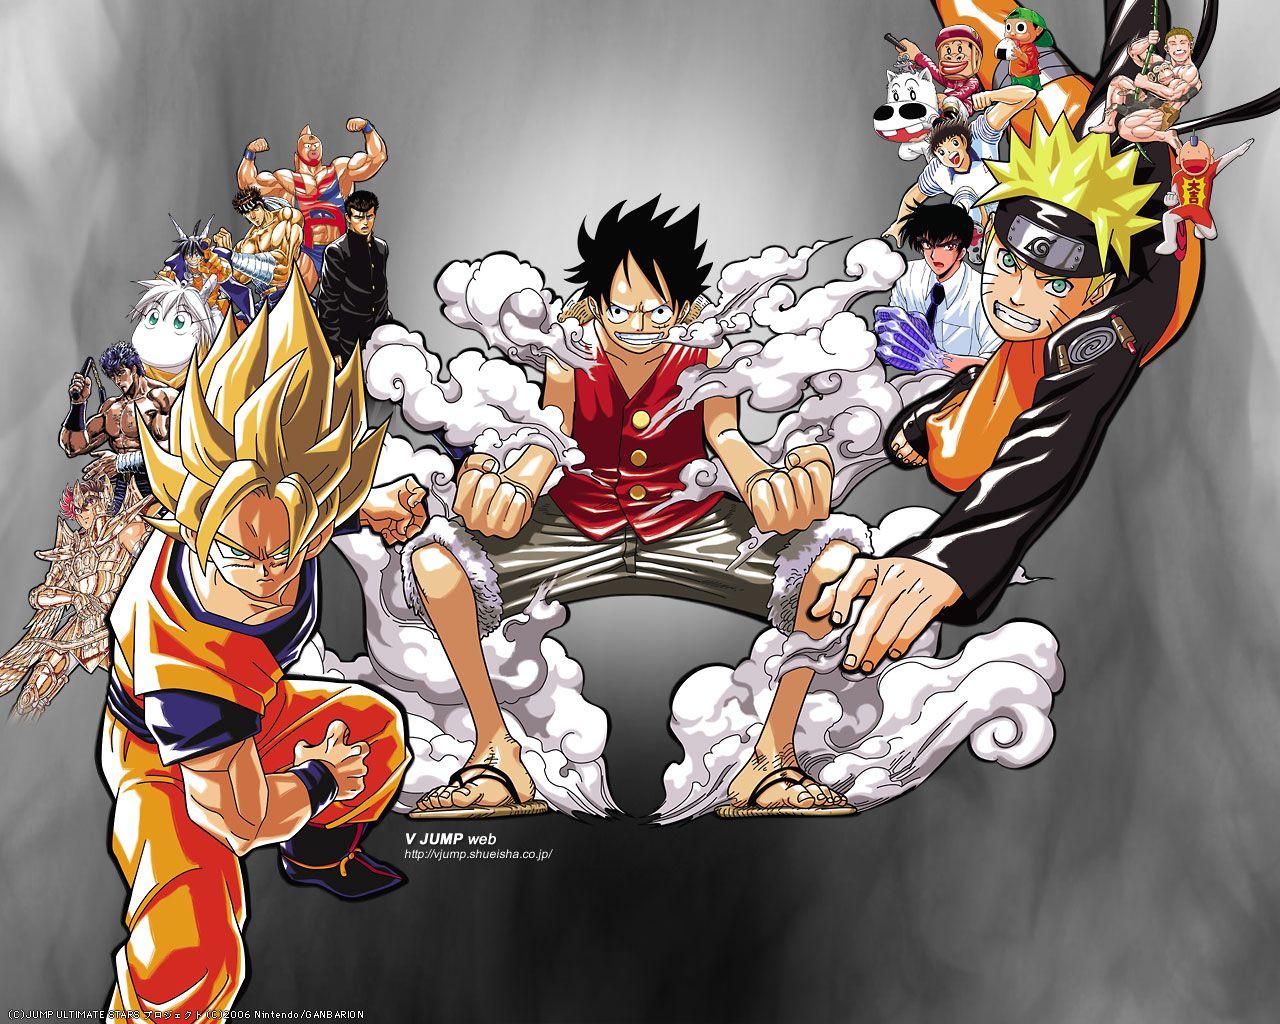 Hãy chiêm ngưỡng đội hình Goku Luffy Naruto với những hình nền hoành tráng đầy màu sắc. Tại đây, những siêu anh hùng của thế giới manga sẽ tái hiện chân thực trên màn hình điện thoại của bạn. Hãy sẵn sàng bị cuốn hút bởi vẻ đẹp và sức mạnh của họ.